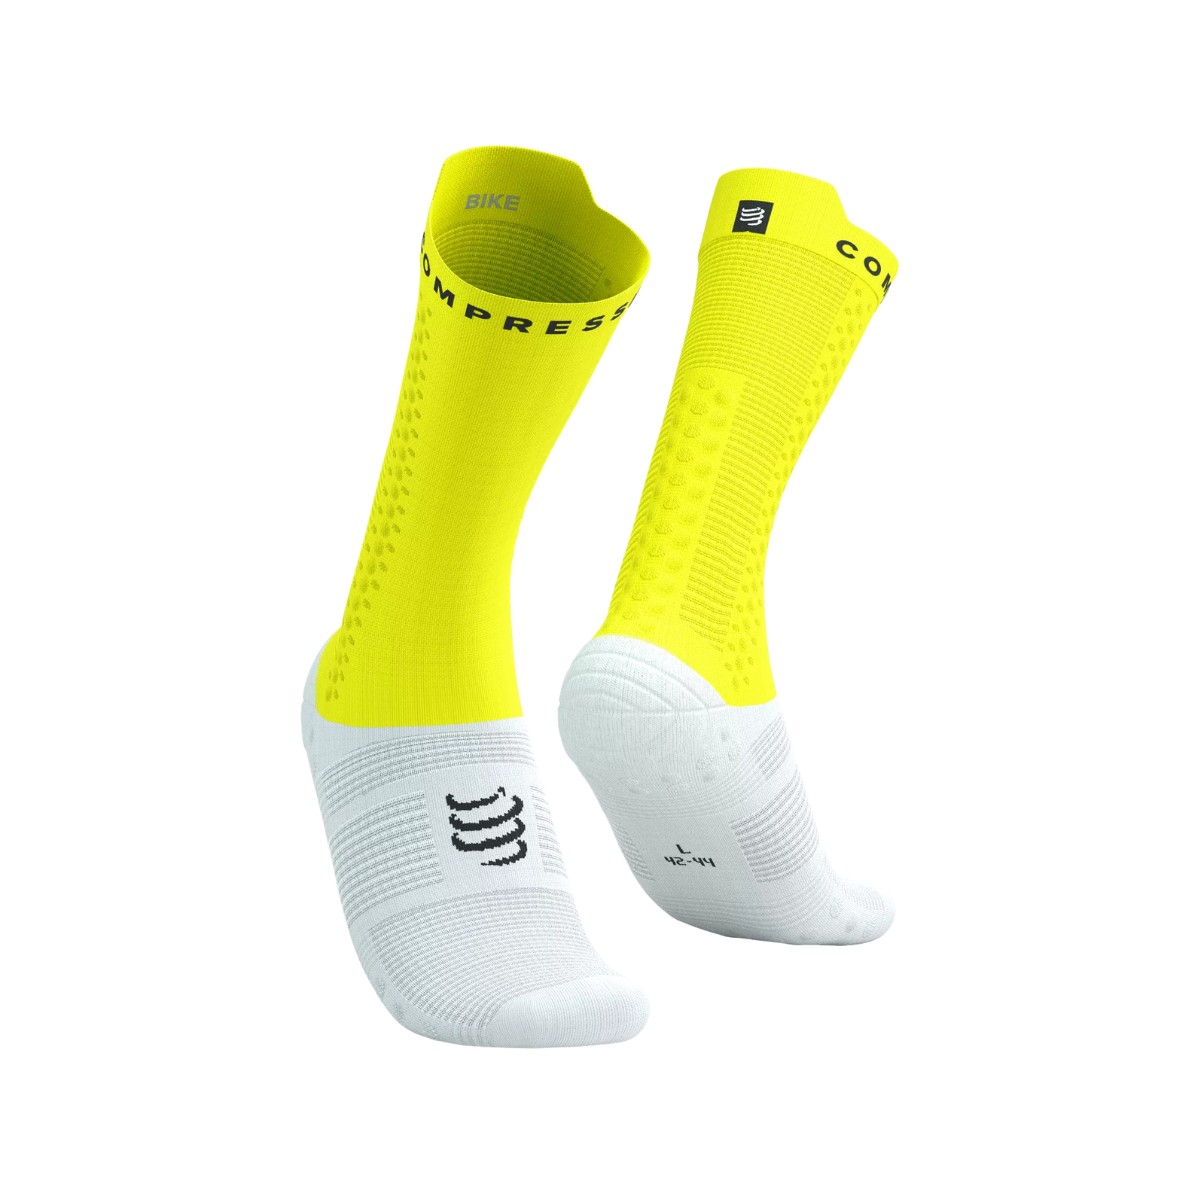 Socken Compressport Pro Racing v4.0 Gelb Weiß, Größe Größe 3